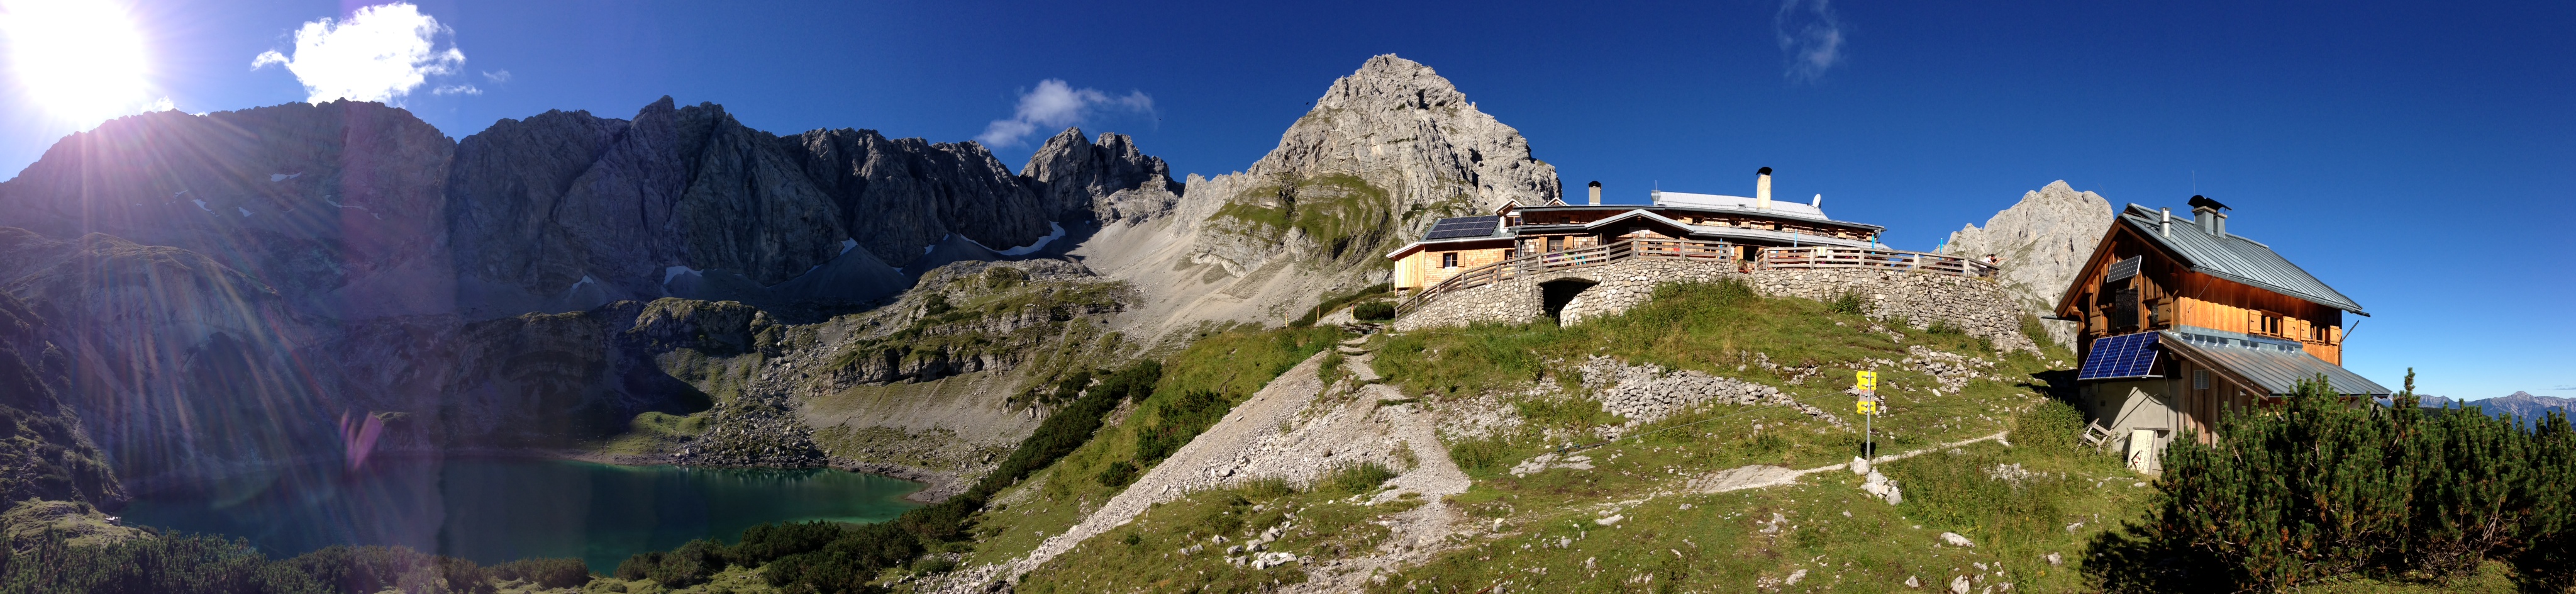 Coburger Hütte Tirol